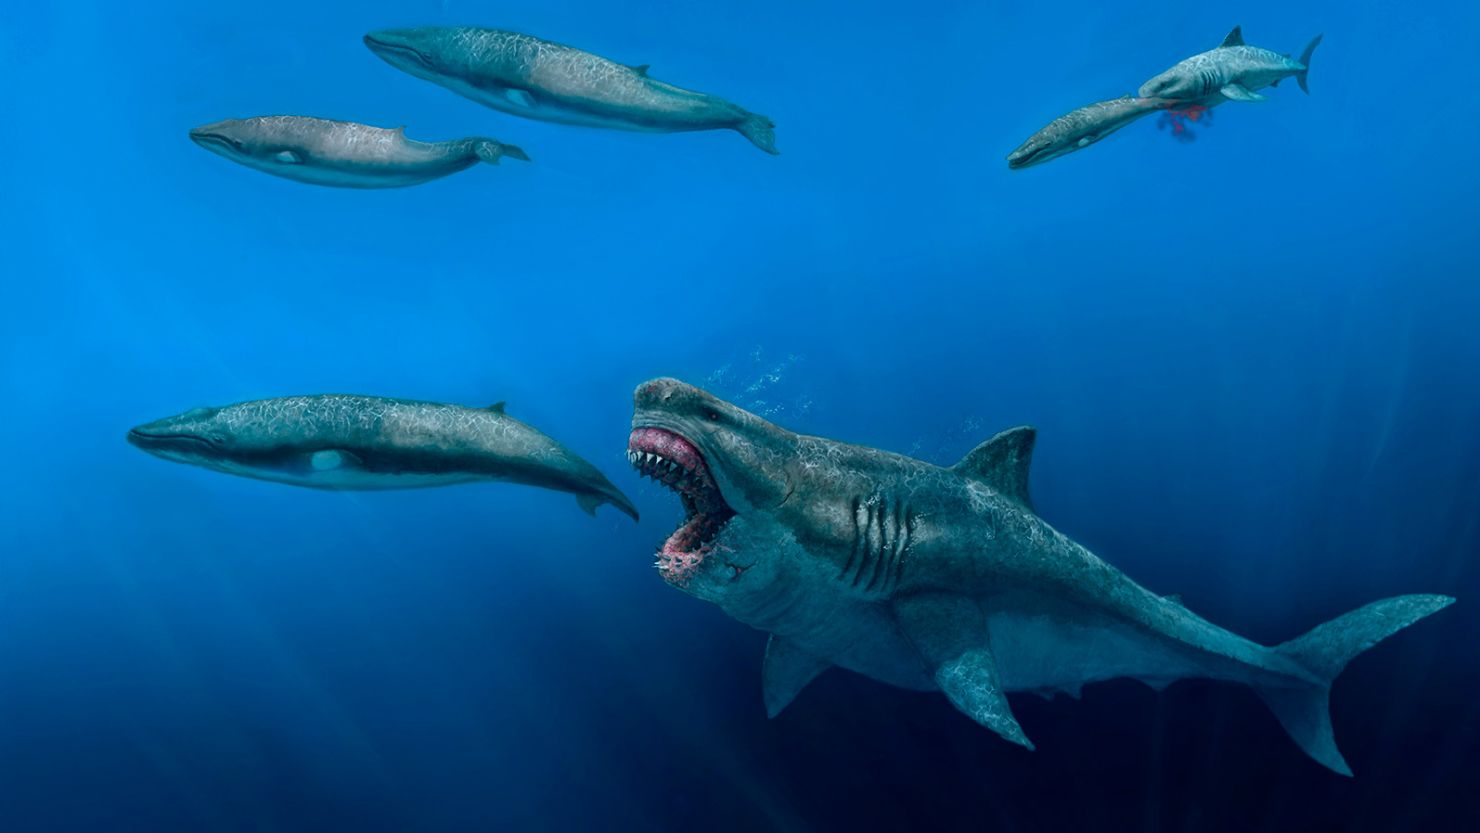 https://media.cnn.com/api/v1/images/stellar/prod/220819140051-megalodon-giant-shark-discovery.jpg?c=16x9&q=h_833,w_1480,c_fill